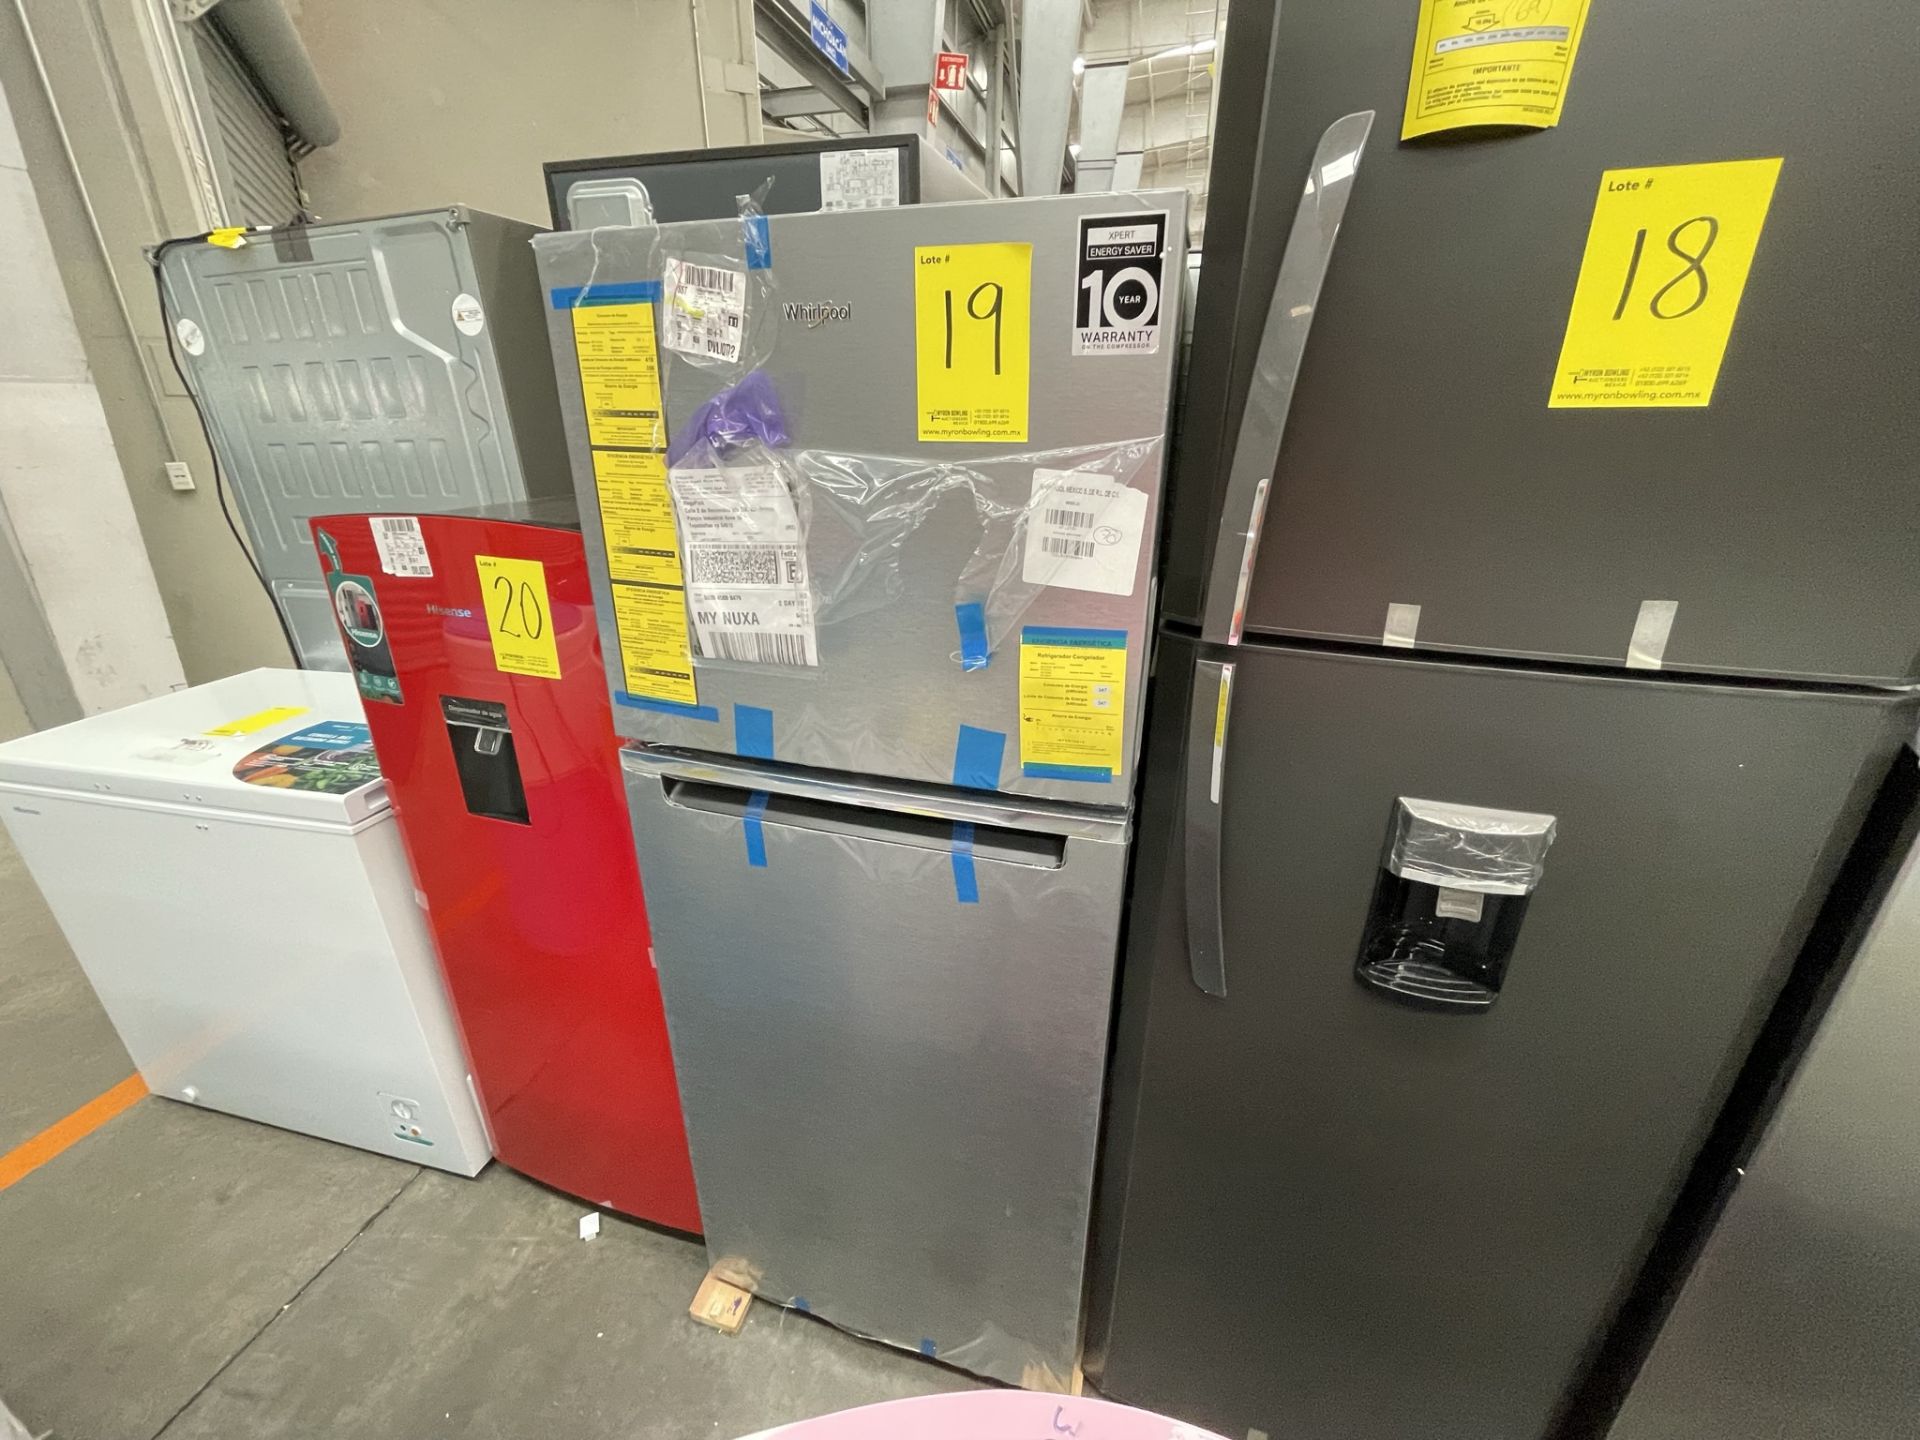 (EQUIPO NUEVO) 1 Refrigerador Marca WHIRLPOOL, Modelo WT1230K, Serie VSB3547703, Color GRIS, LB-611 - Image 4 of 9